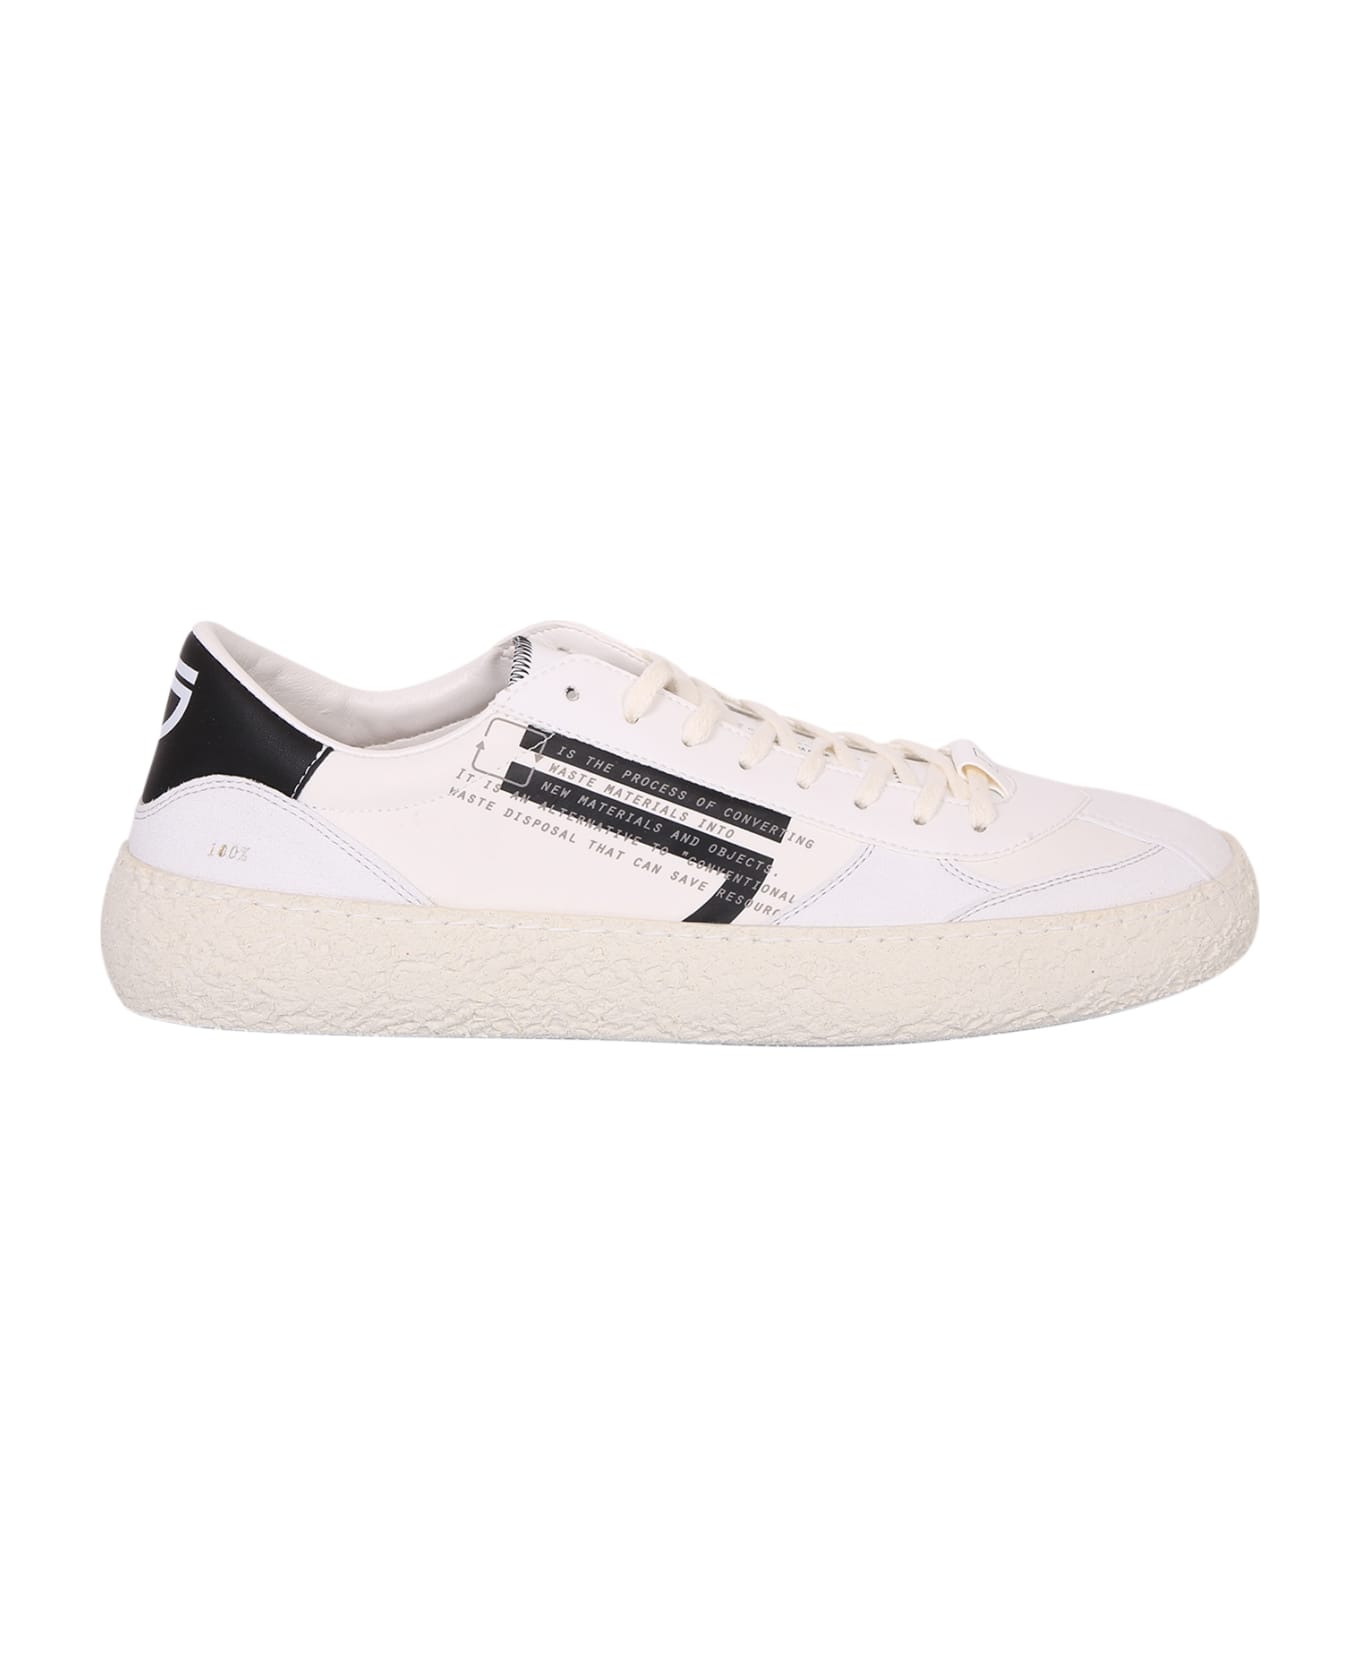 Puraai Mora Low-top Sneakers - White